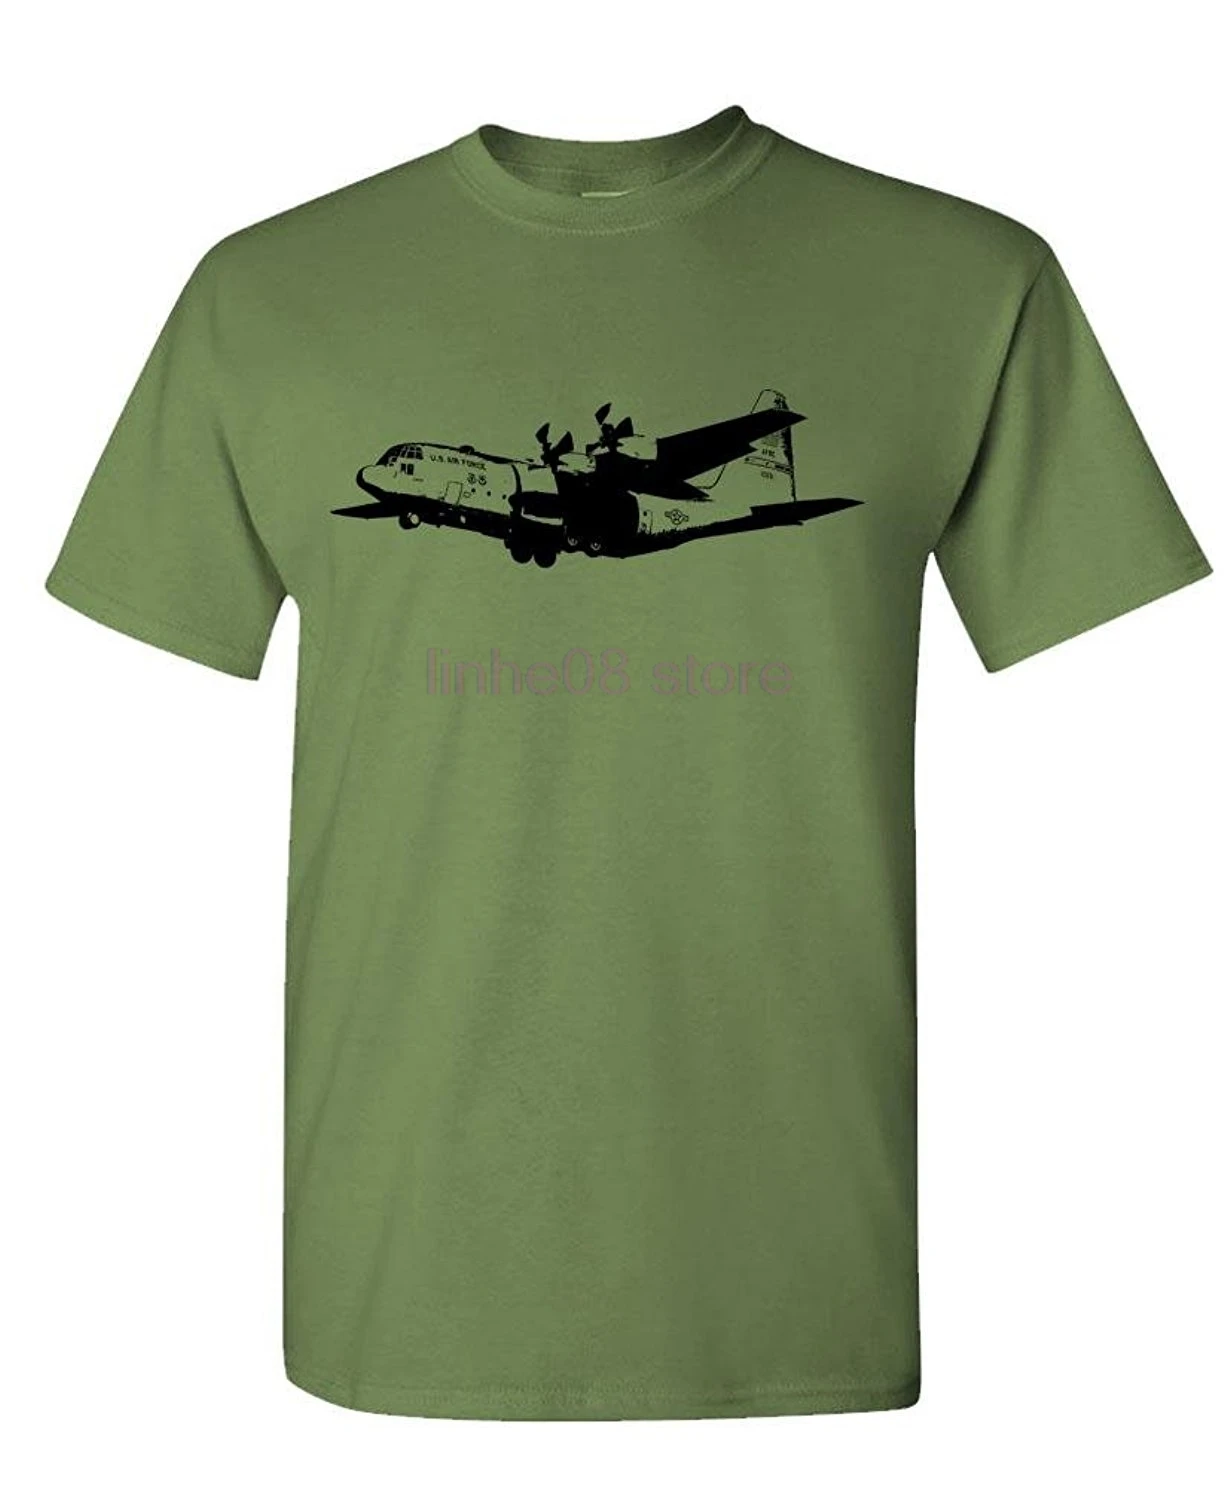 Футболка мужские футболки хипстер Топы Футболка с принтом летние шорты унисекс больше размеров и цветов-C-130 грузовой самолет-Мужская